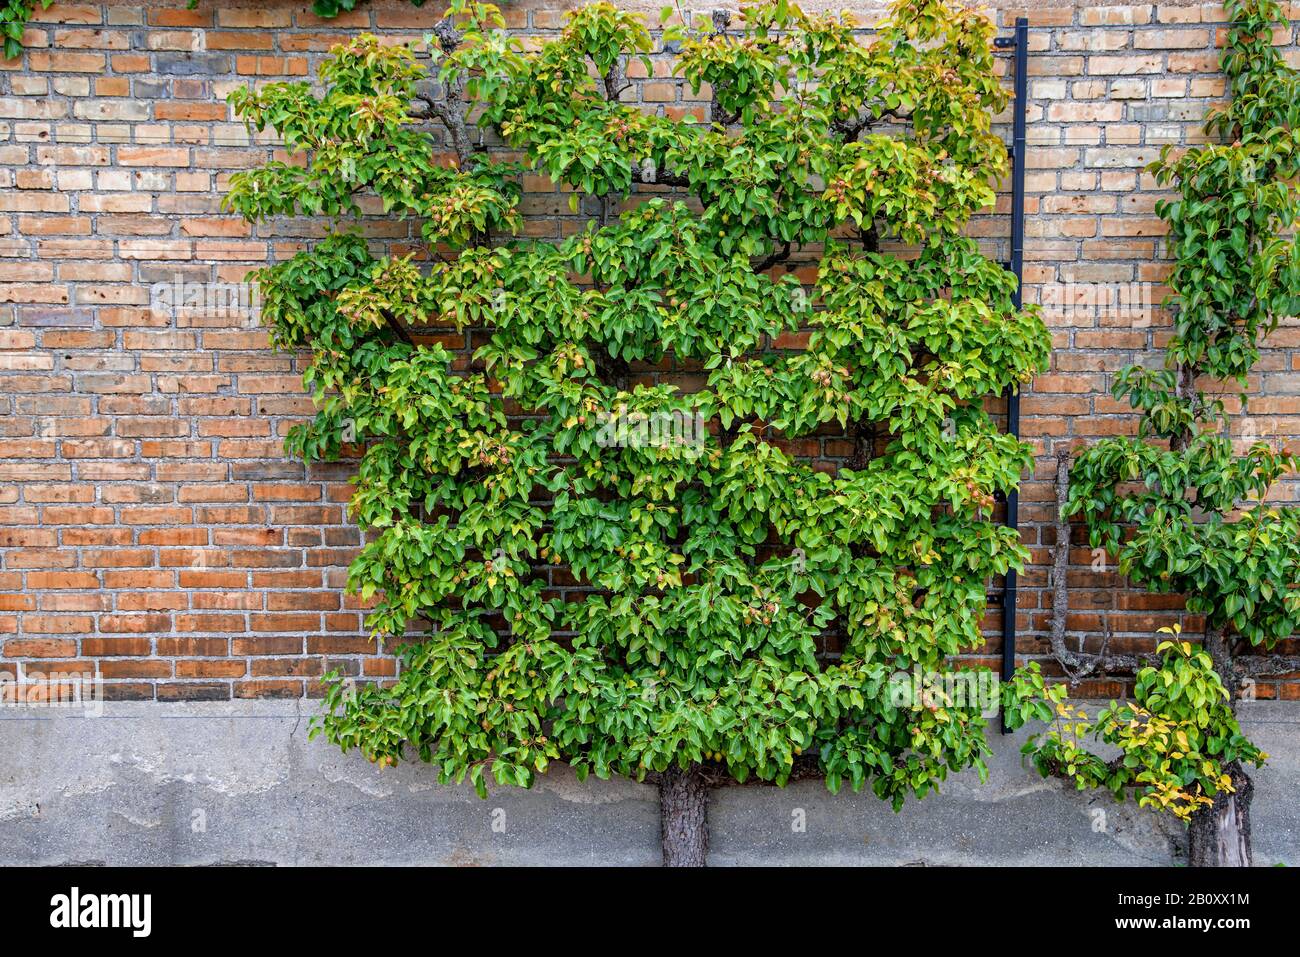 Pera común (Pyrus communis), fruto de la espalier, Suecia, Skane laen Foto de stock